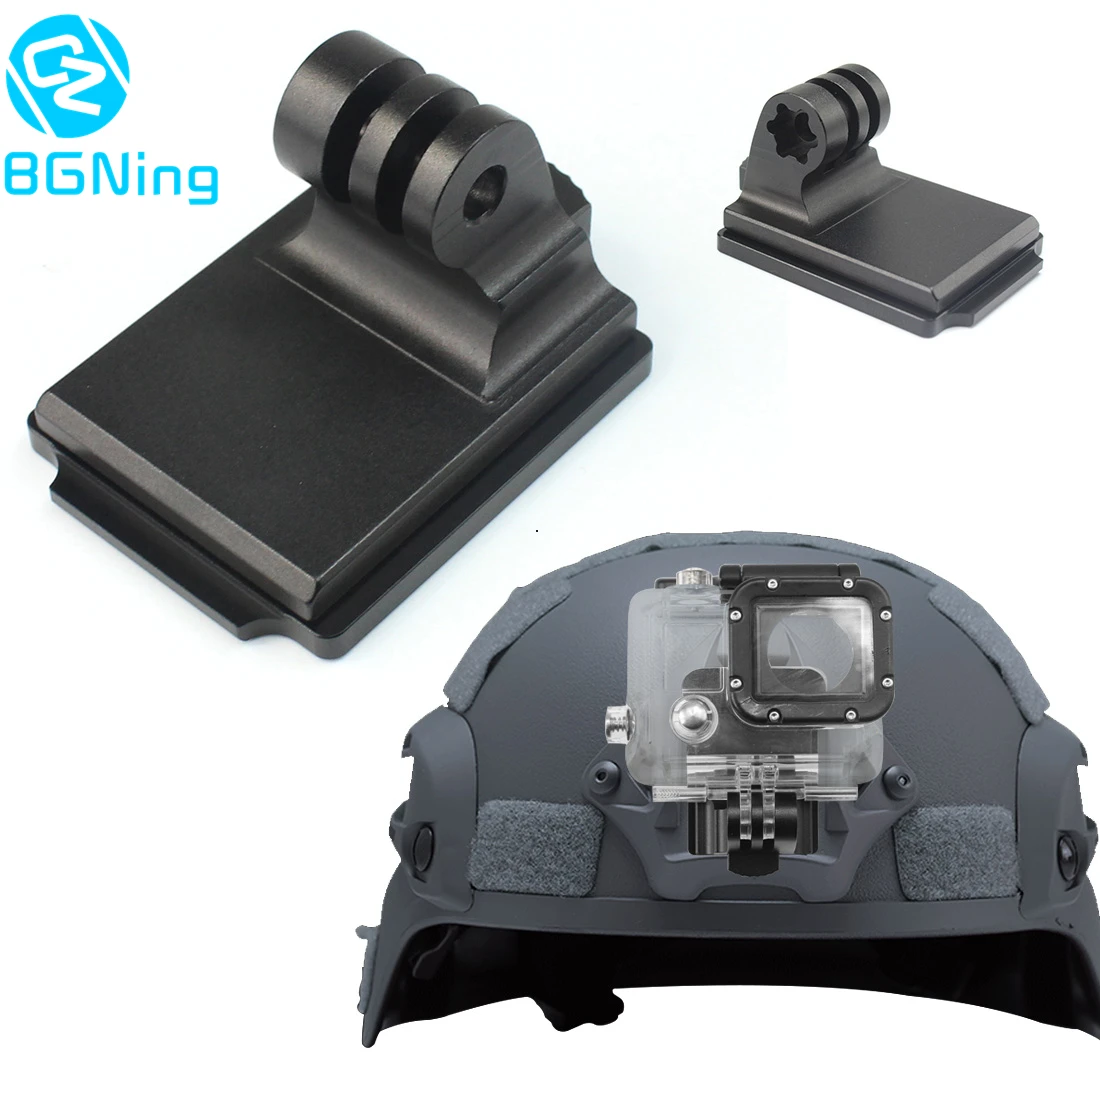 Алюминиевый шлем фиксированное Крепление NVG База держатель адаптер для GOPRO Hero 7 4 5 6 Session yi Sjcam eken экшн-видео спортивные камеры